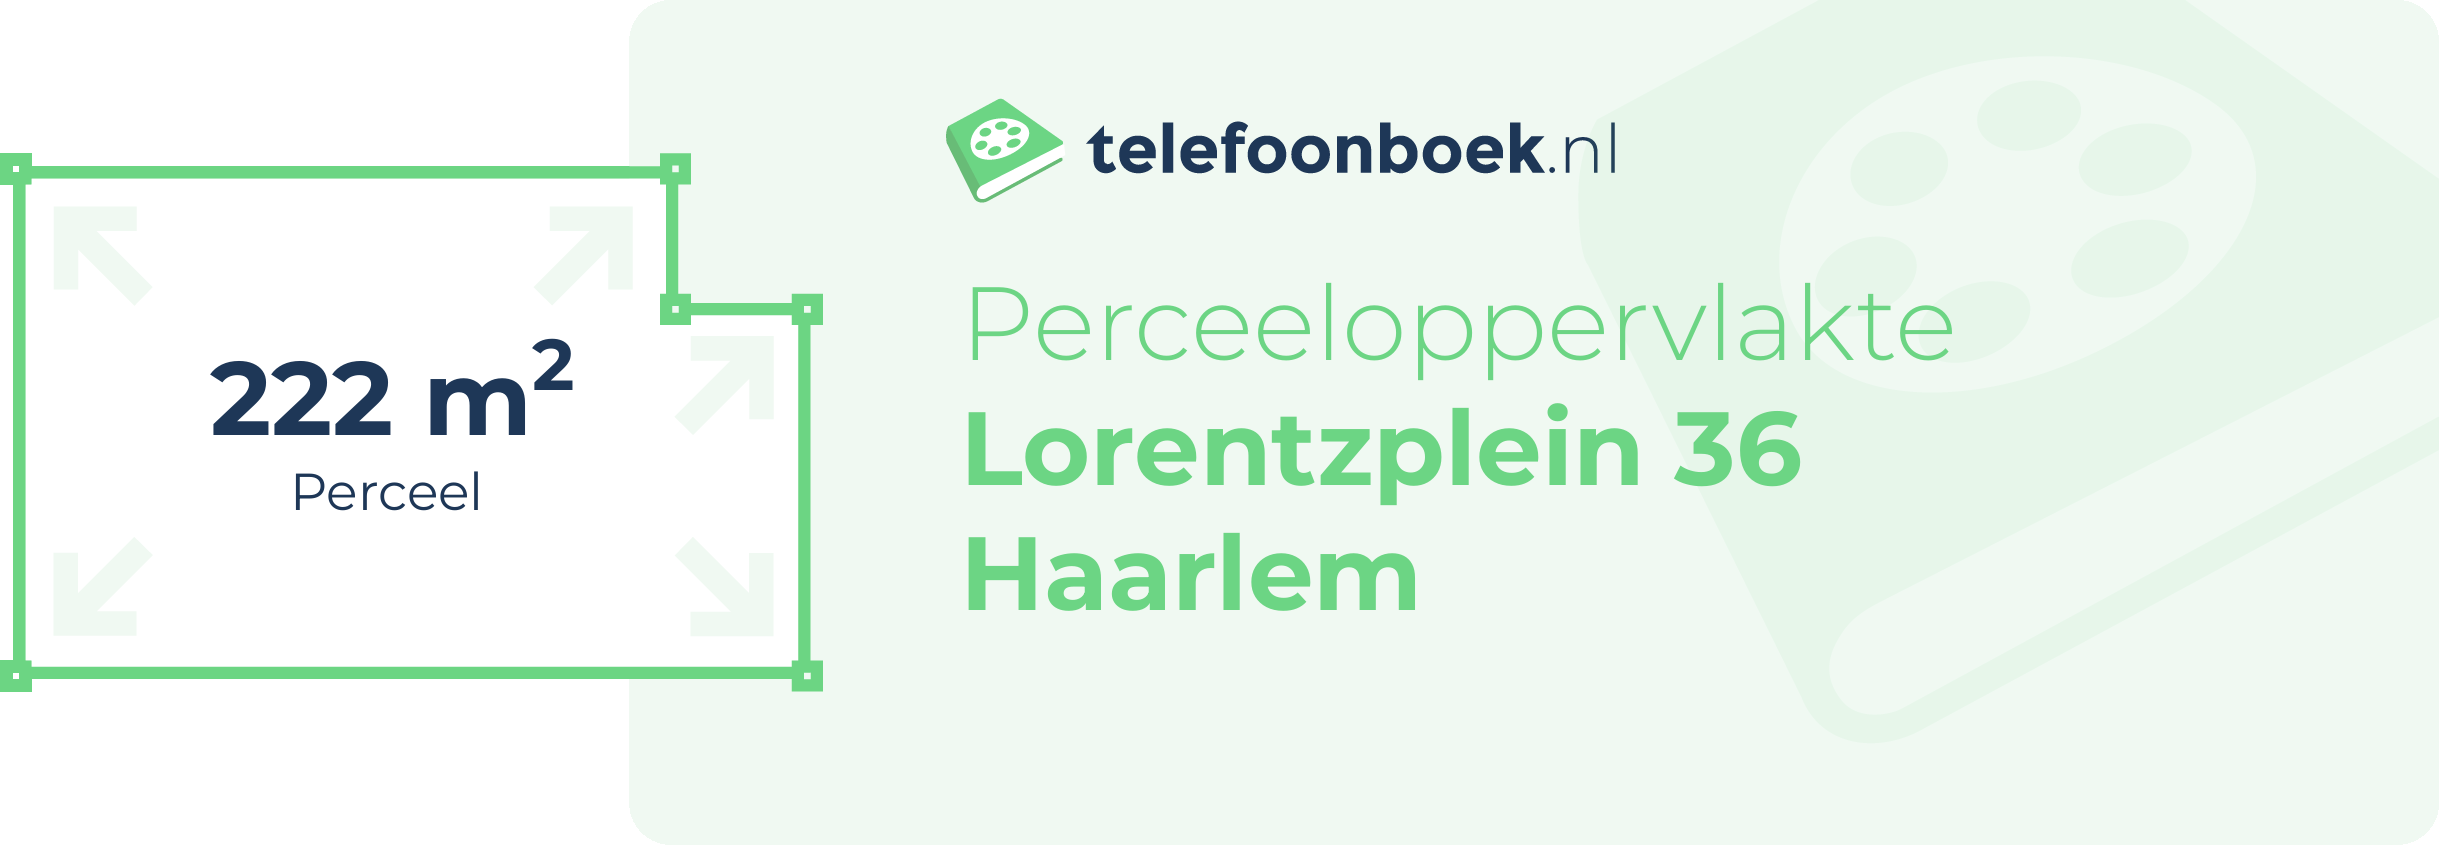 Perceeloppervlakte Lorentzplein 36 Haarlem